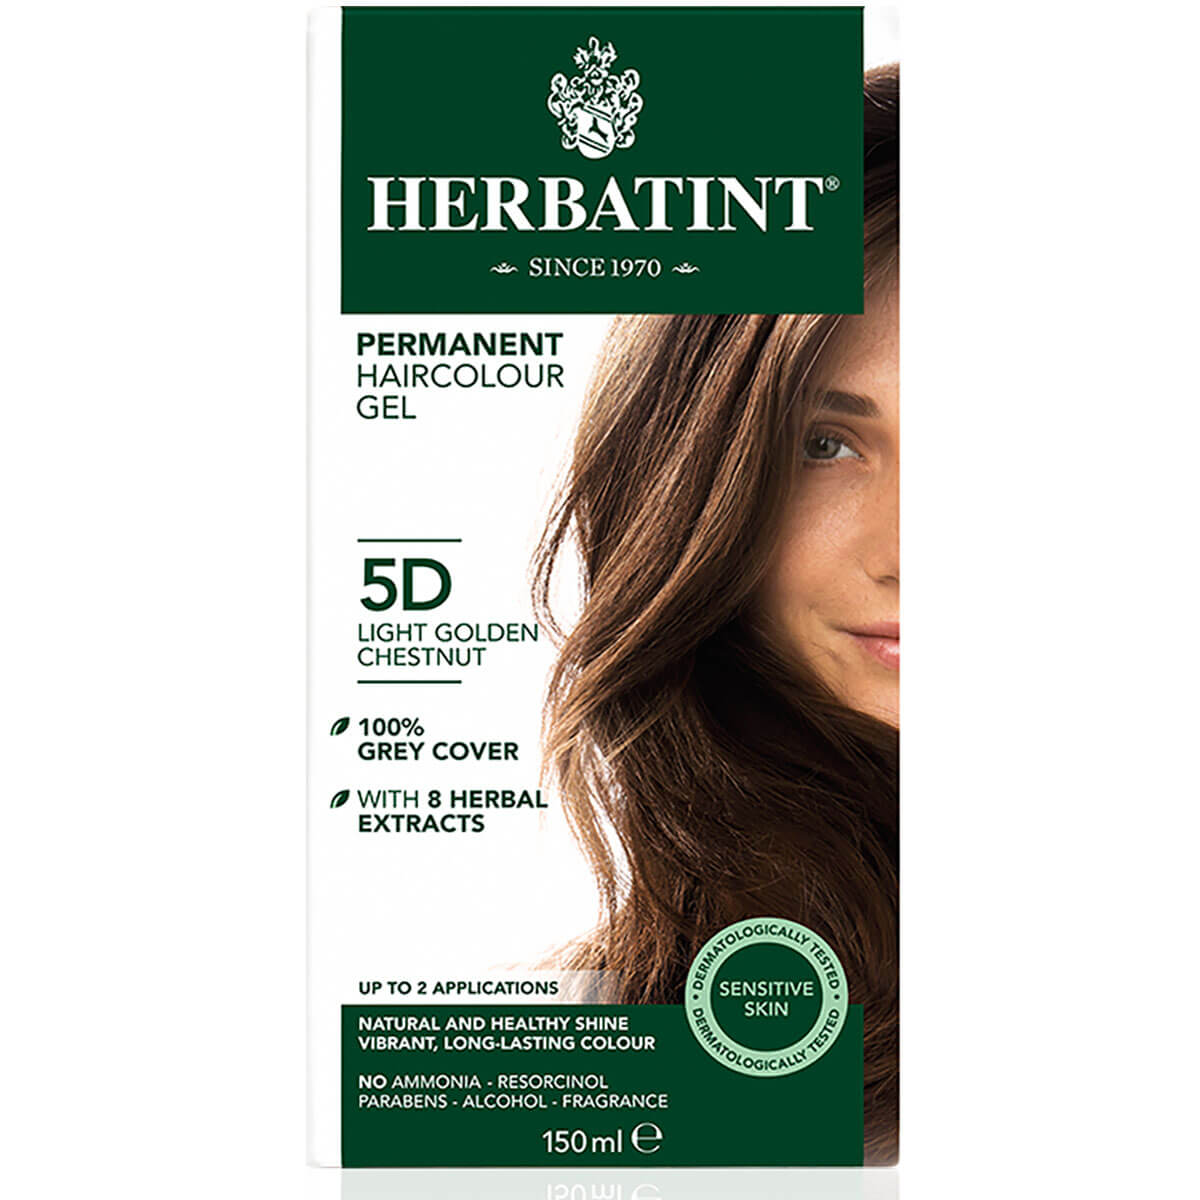 Chestnut, Light Golden (5D) - Herbatint Permanent Hair Colour Gel